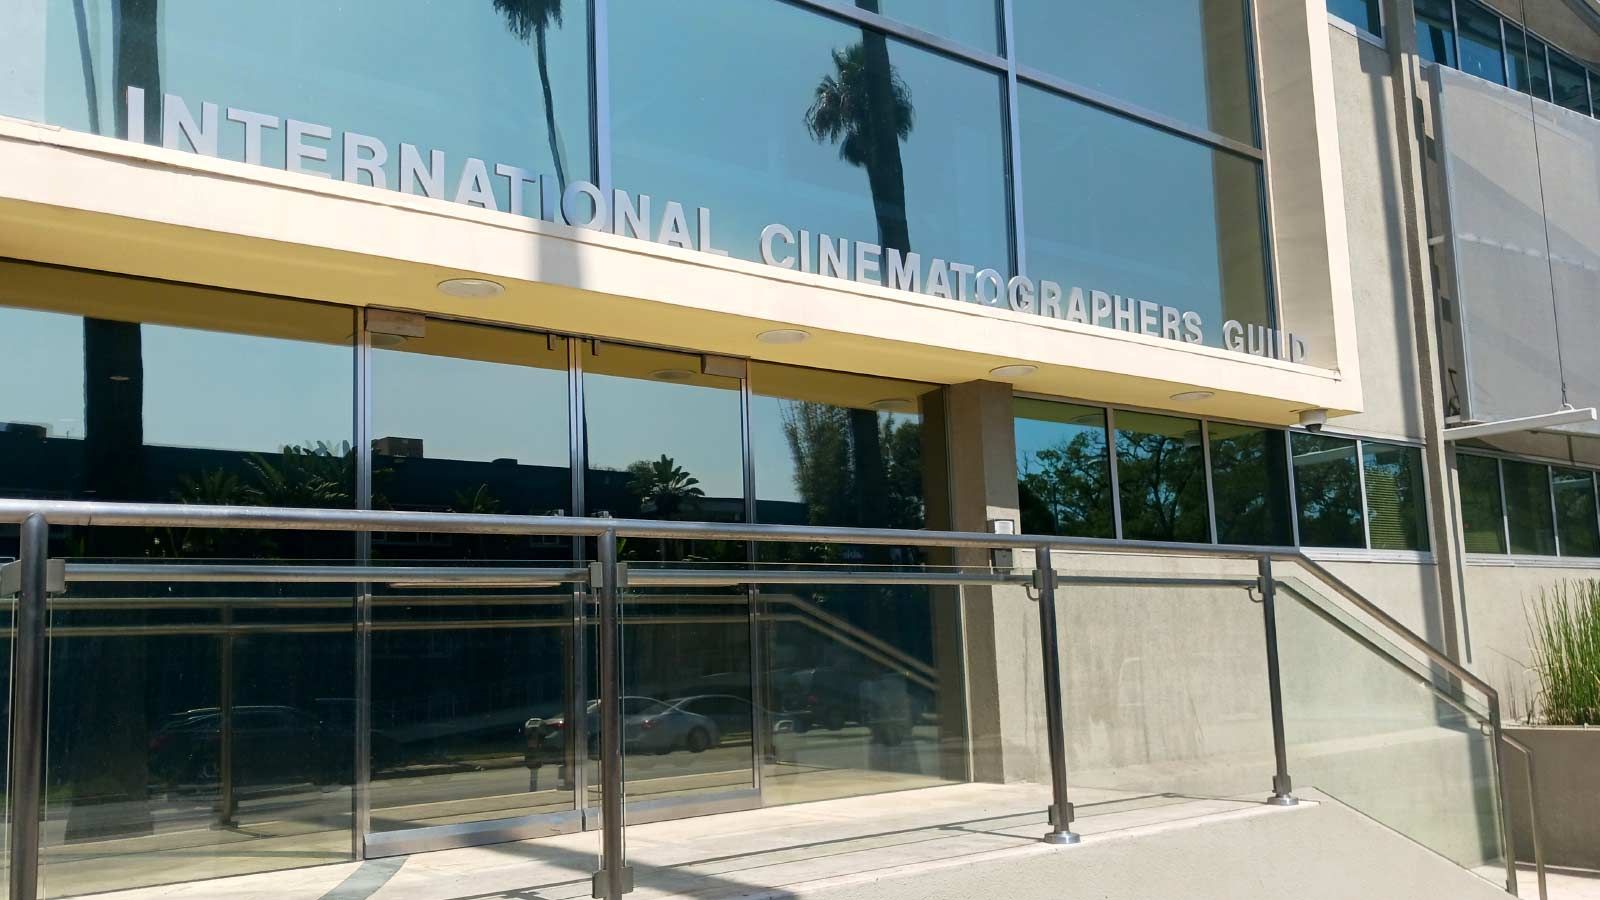 International Cinematographers Guild 3D letter sign